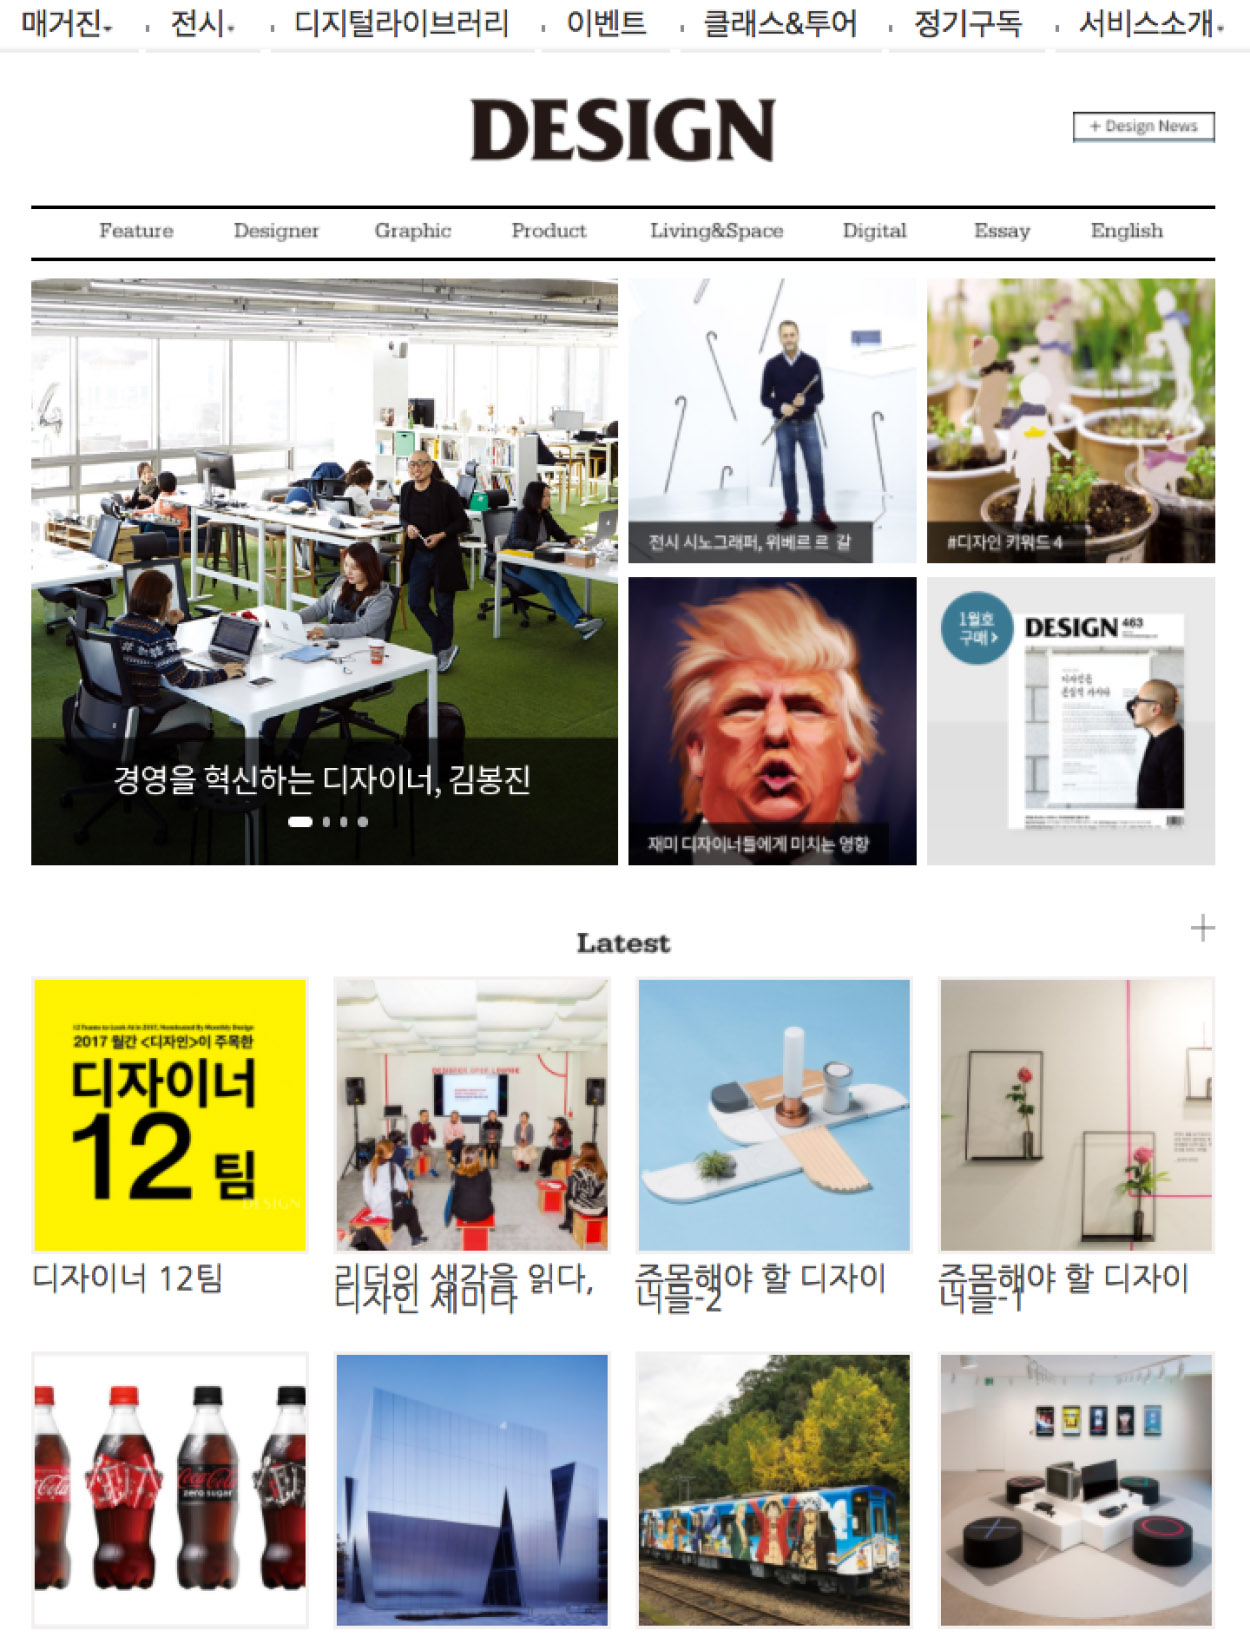 korea graphic design studio